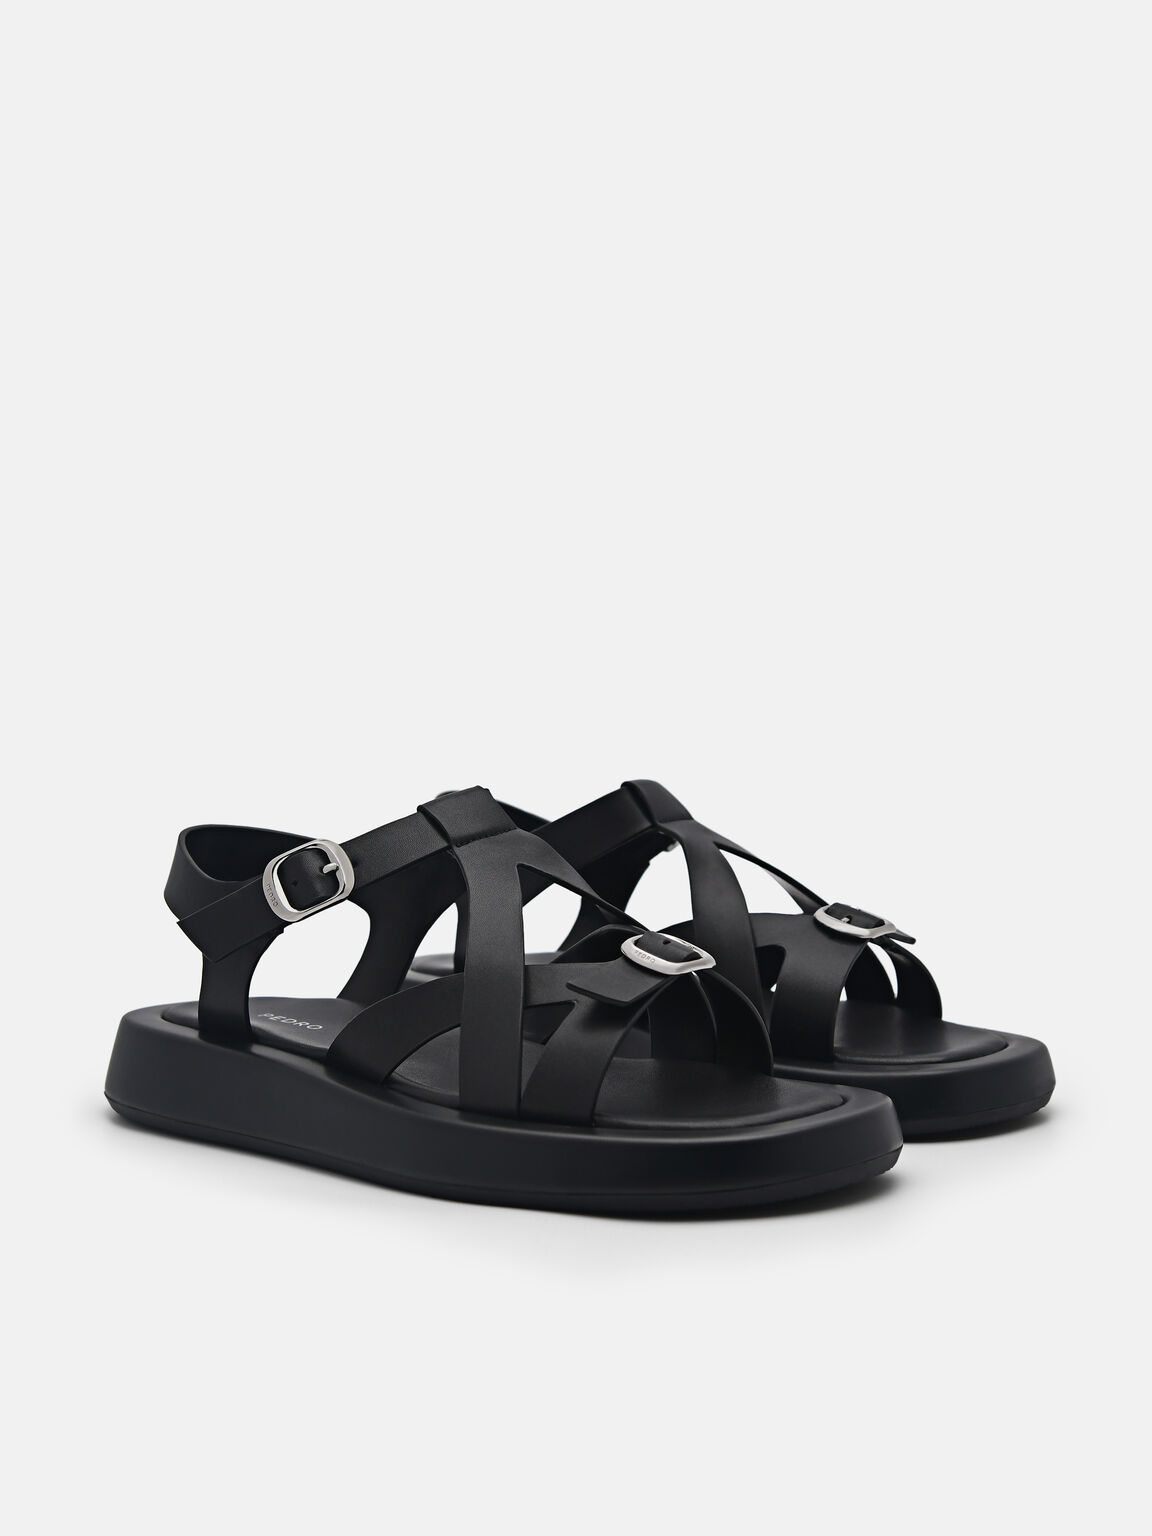 Eden Ankle Strap Sandals, Black